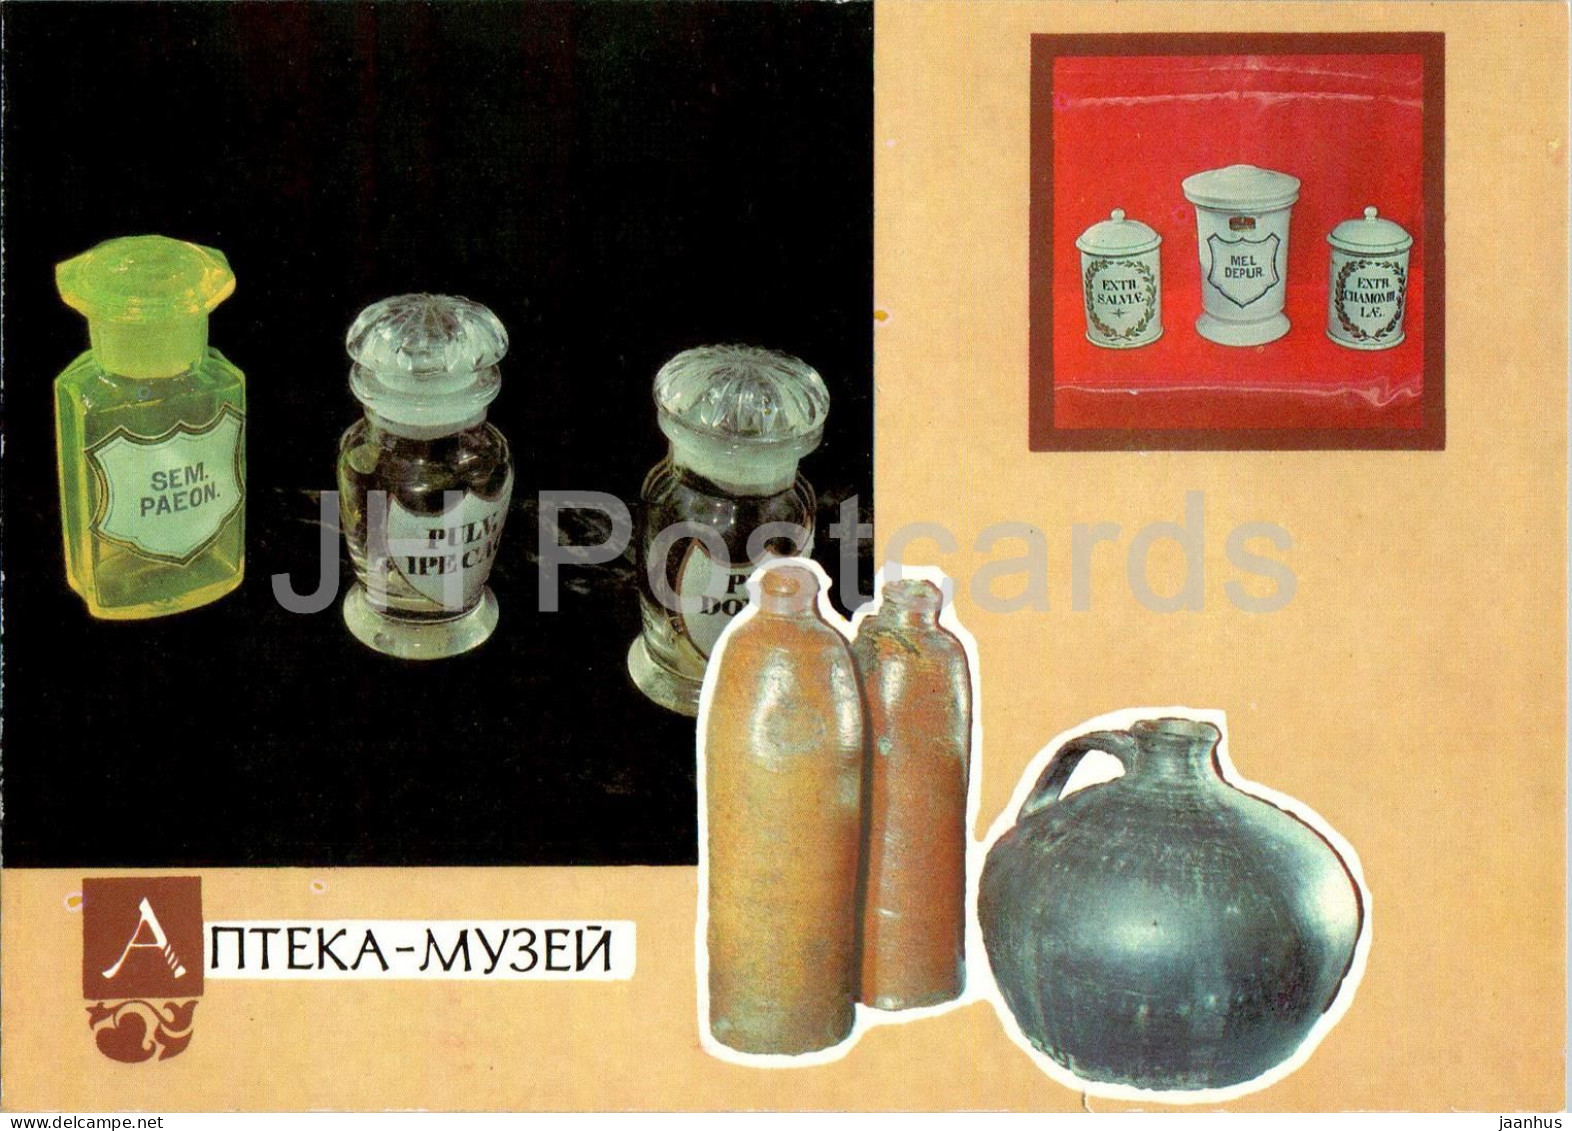 Lviv - Pharmacy Museum - Sem Paeon - Mel Depur - Postal Stationery - 1991 - Ukraine USSR - Unused - Ukraine